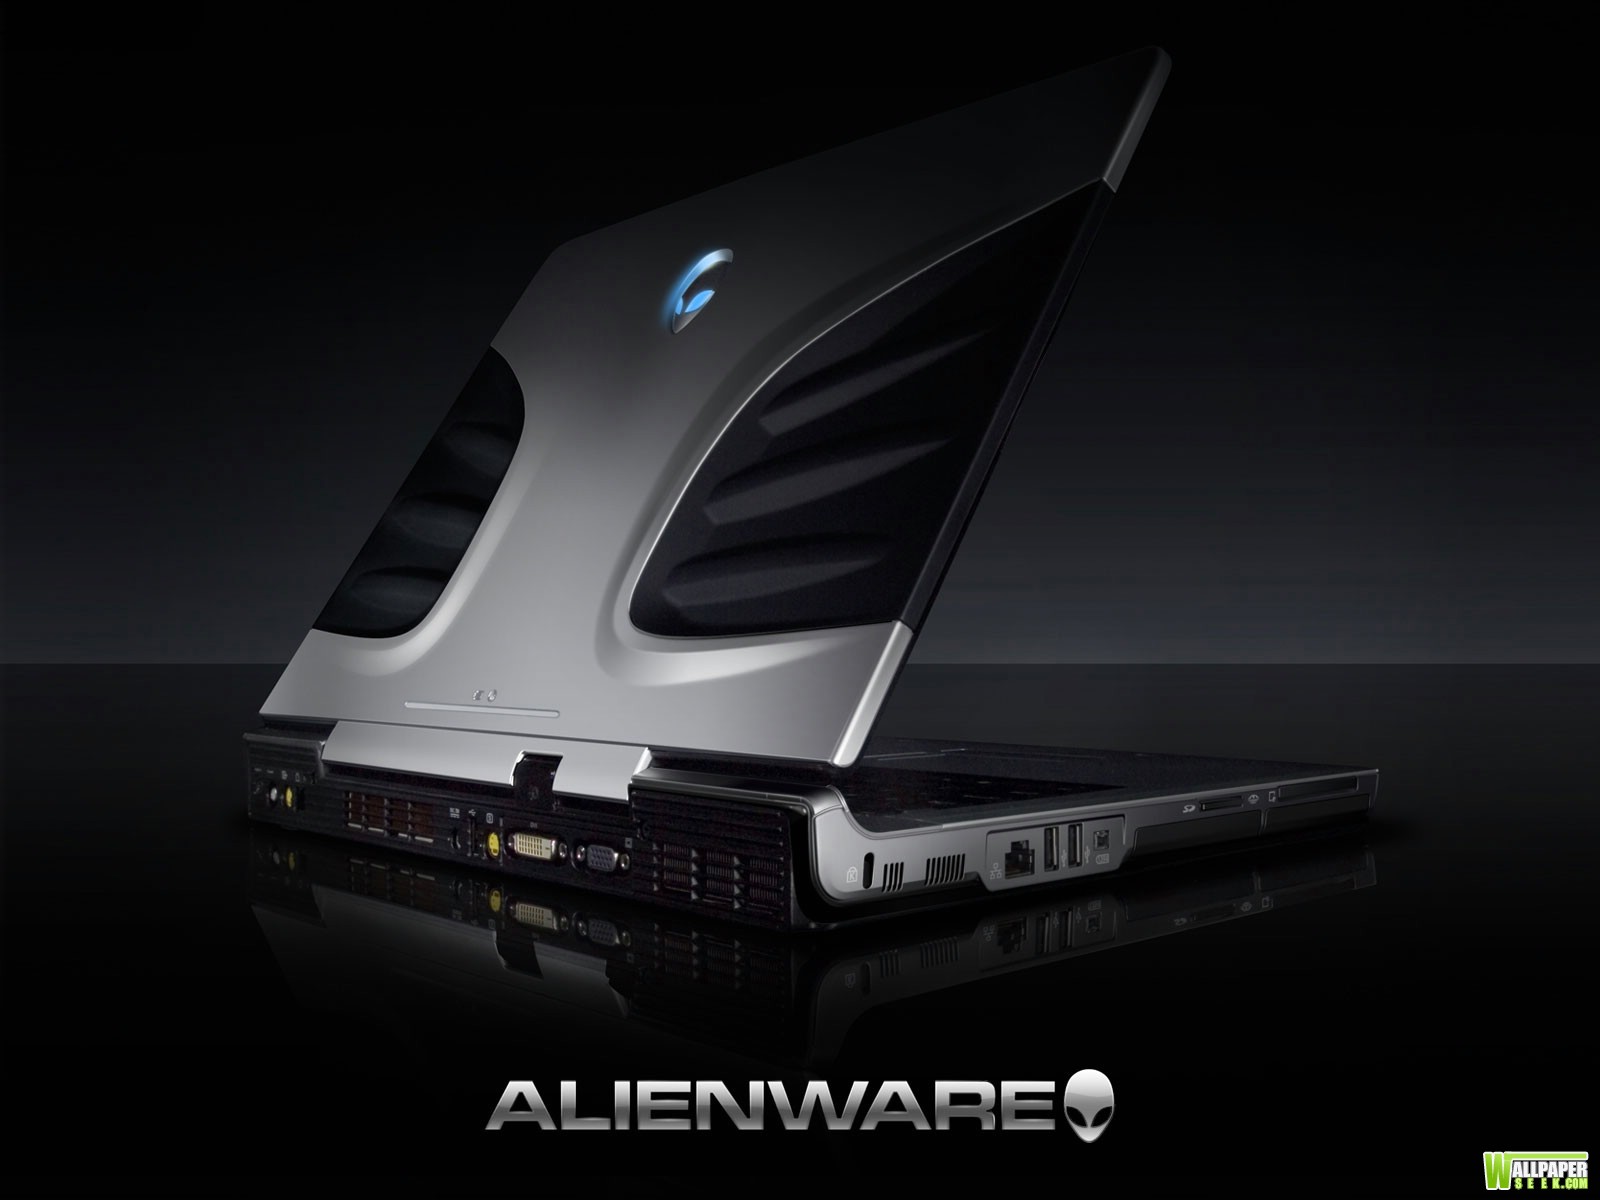 壁纸1600x1200Alienware 戴尔 壁纸27壁纸 Alienware（戴尔）壁纸 Alienware（戴尔）图片 Alienware（戴尔）素材 系统壁纸 系统图库 系统图片素材桌面壁纸